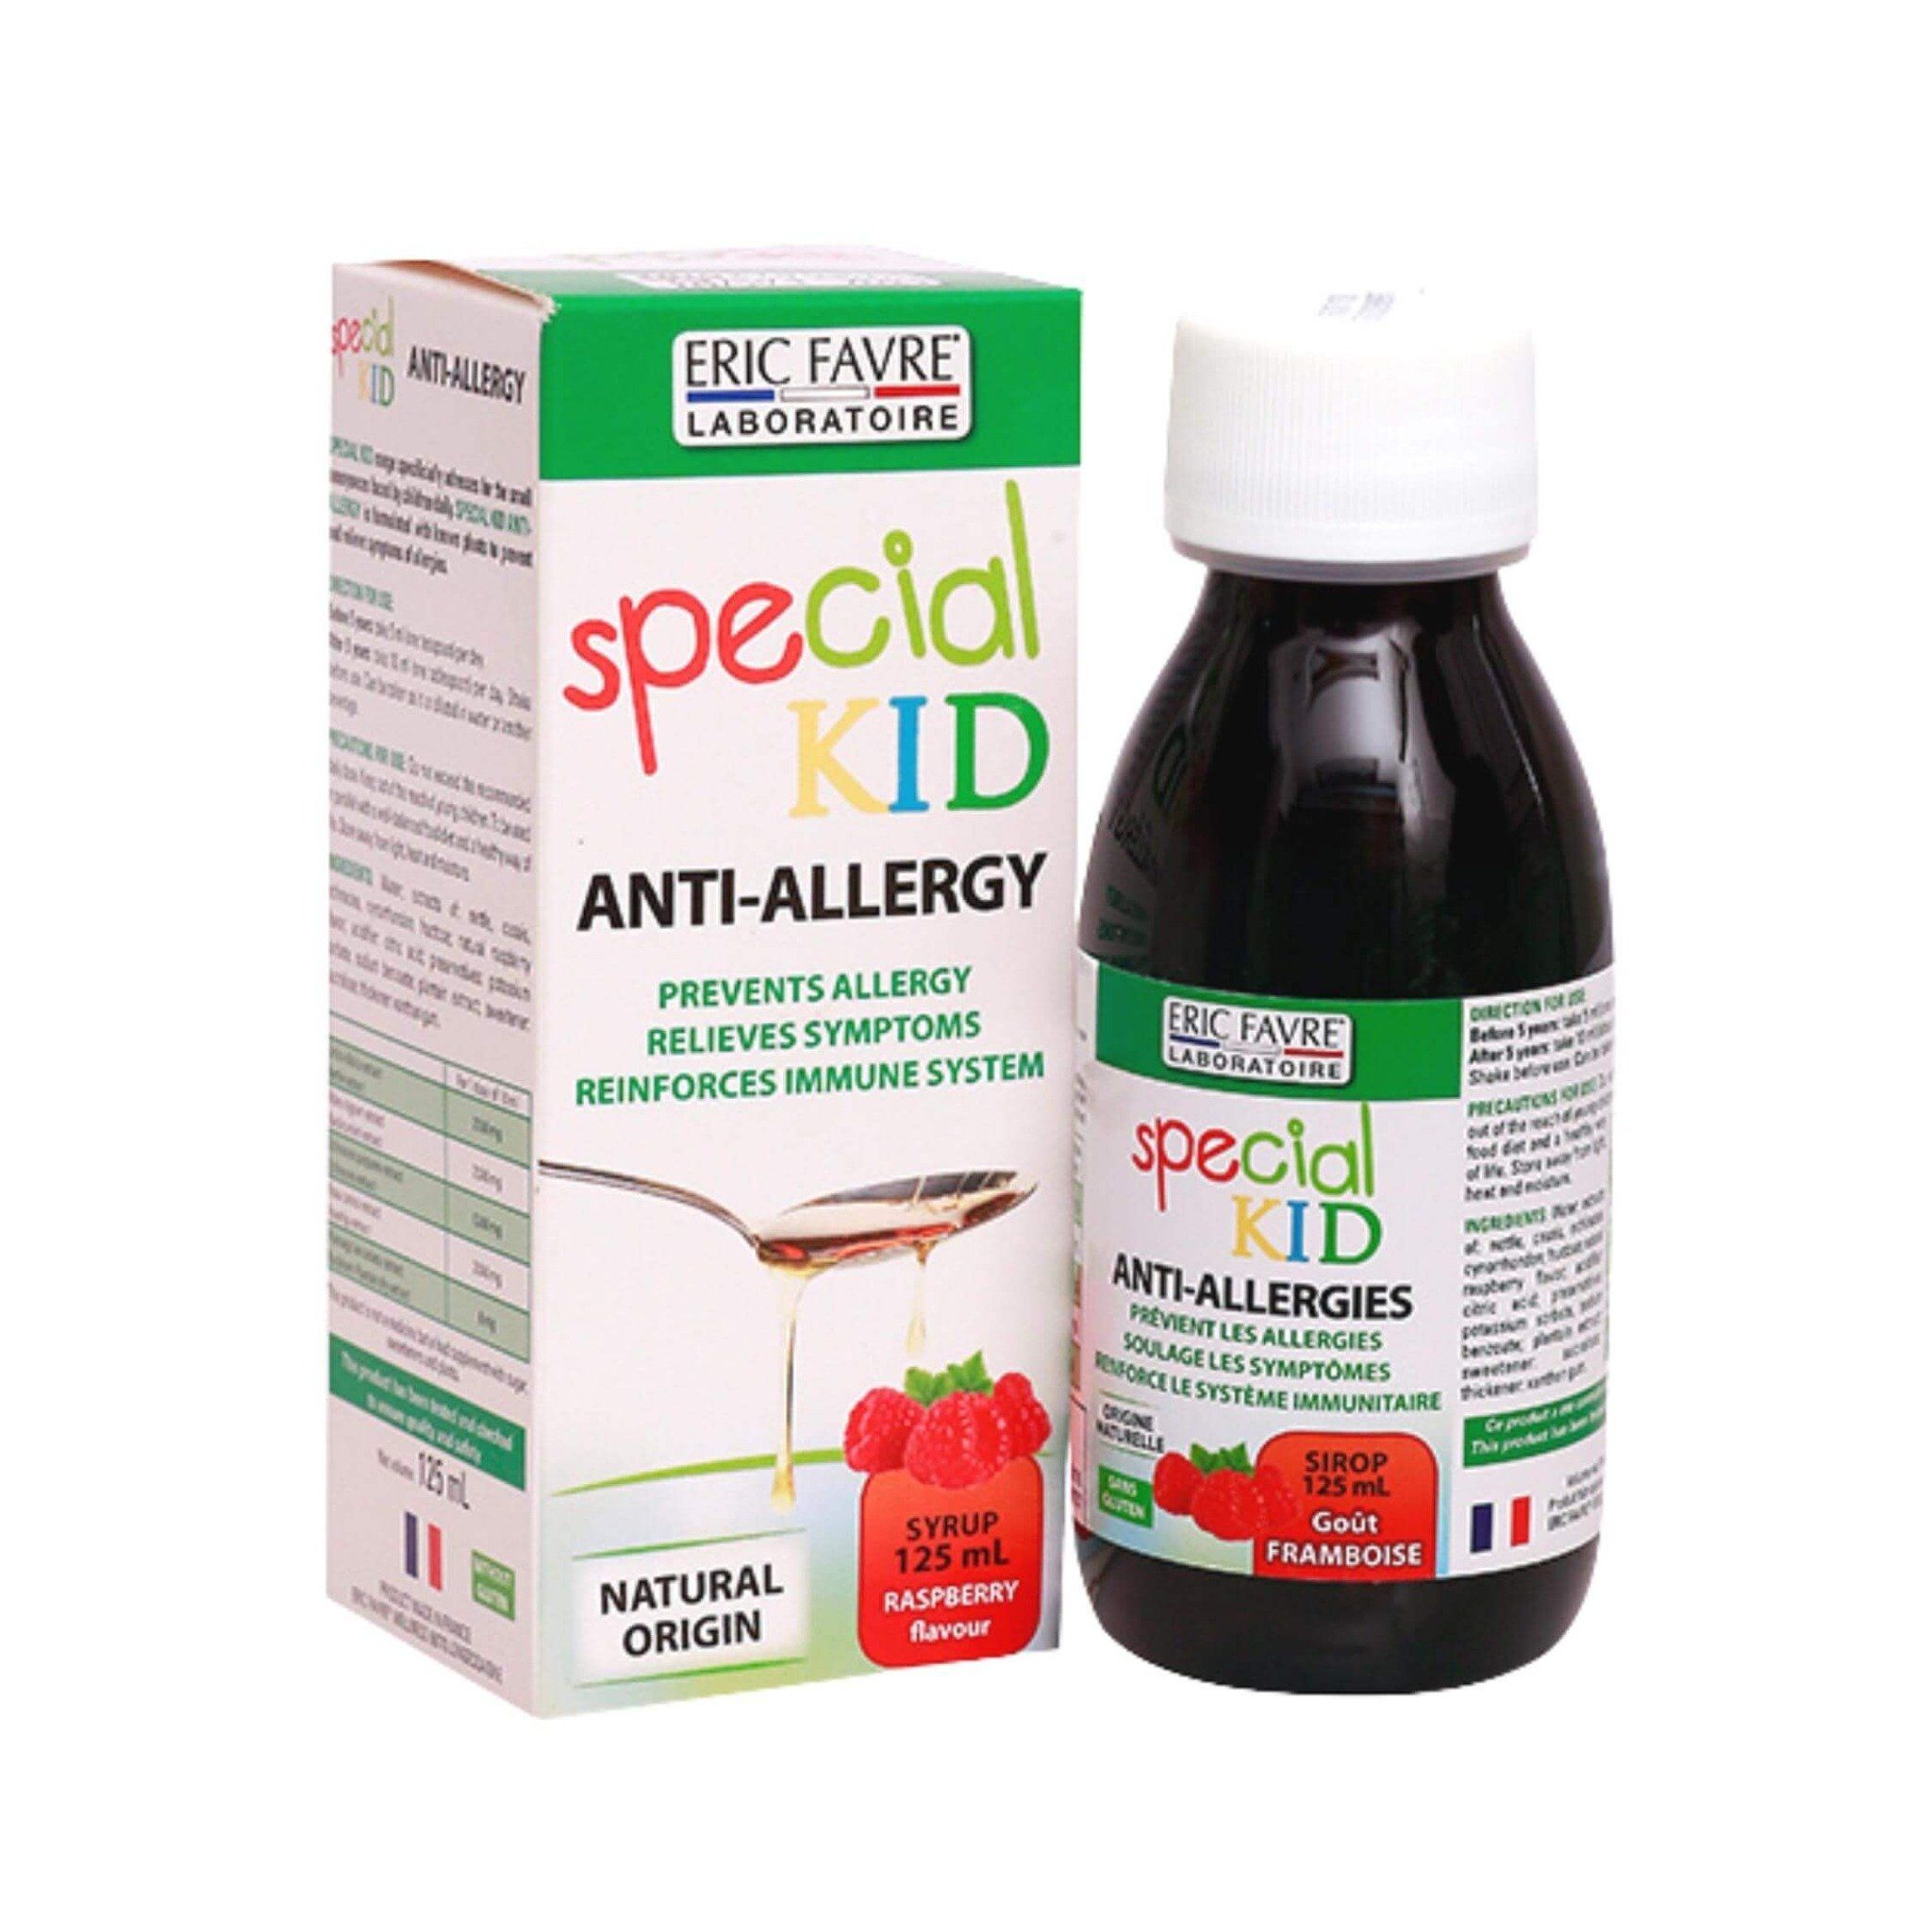  Special Kid Anti-Allergies - Bớt lo mề đay, tránh ngay dị ứng [Nhập khẩu Pháp] 